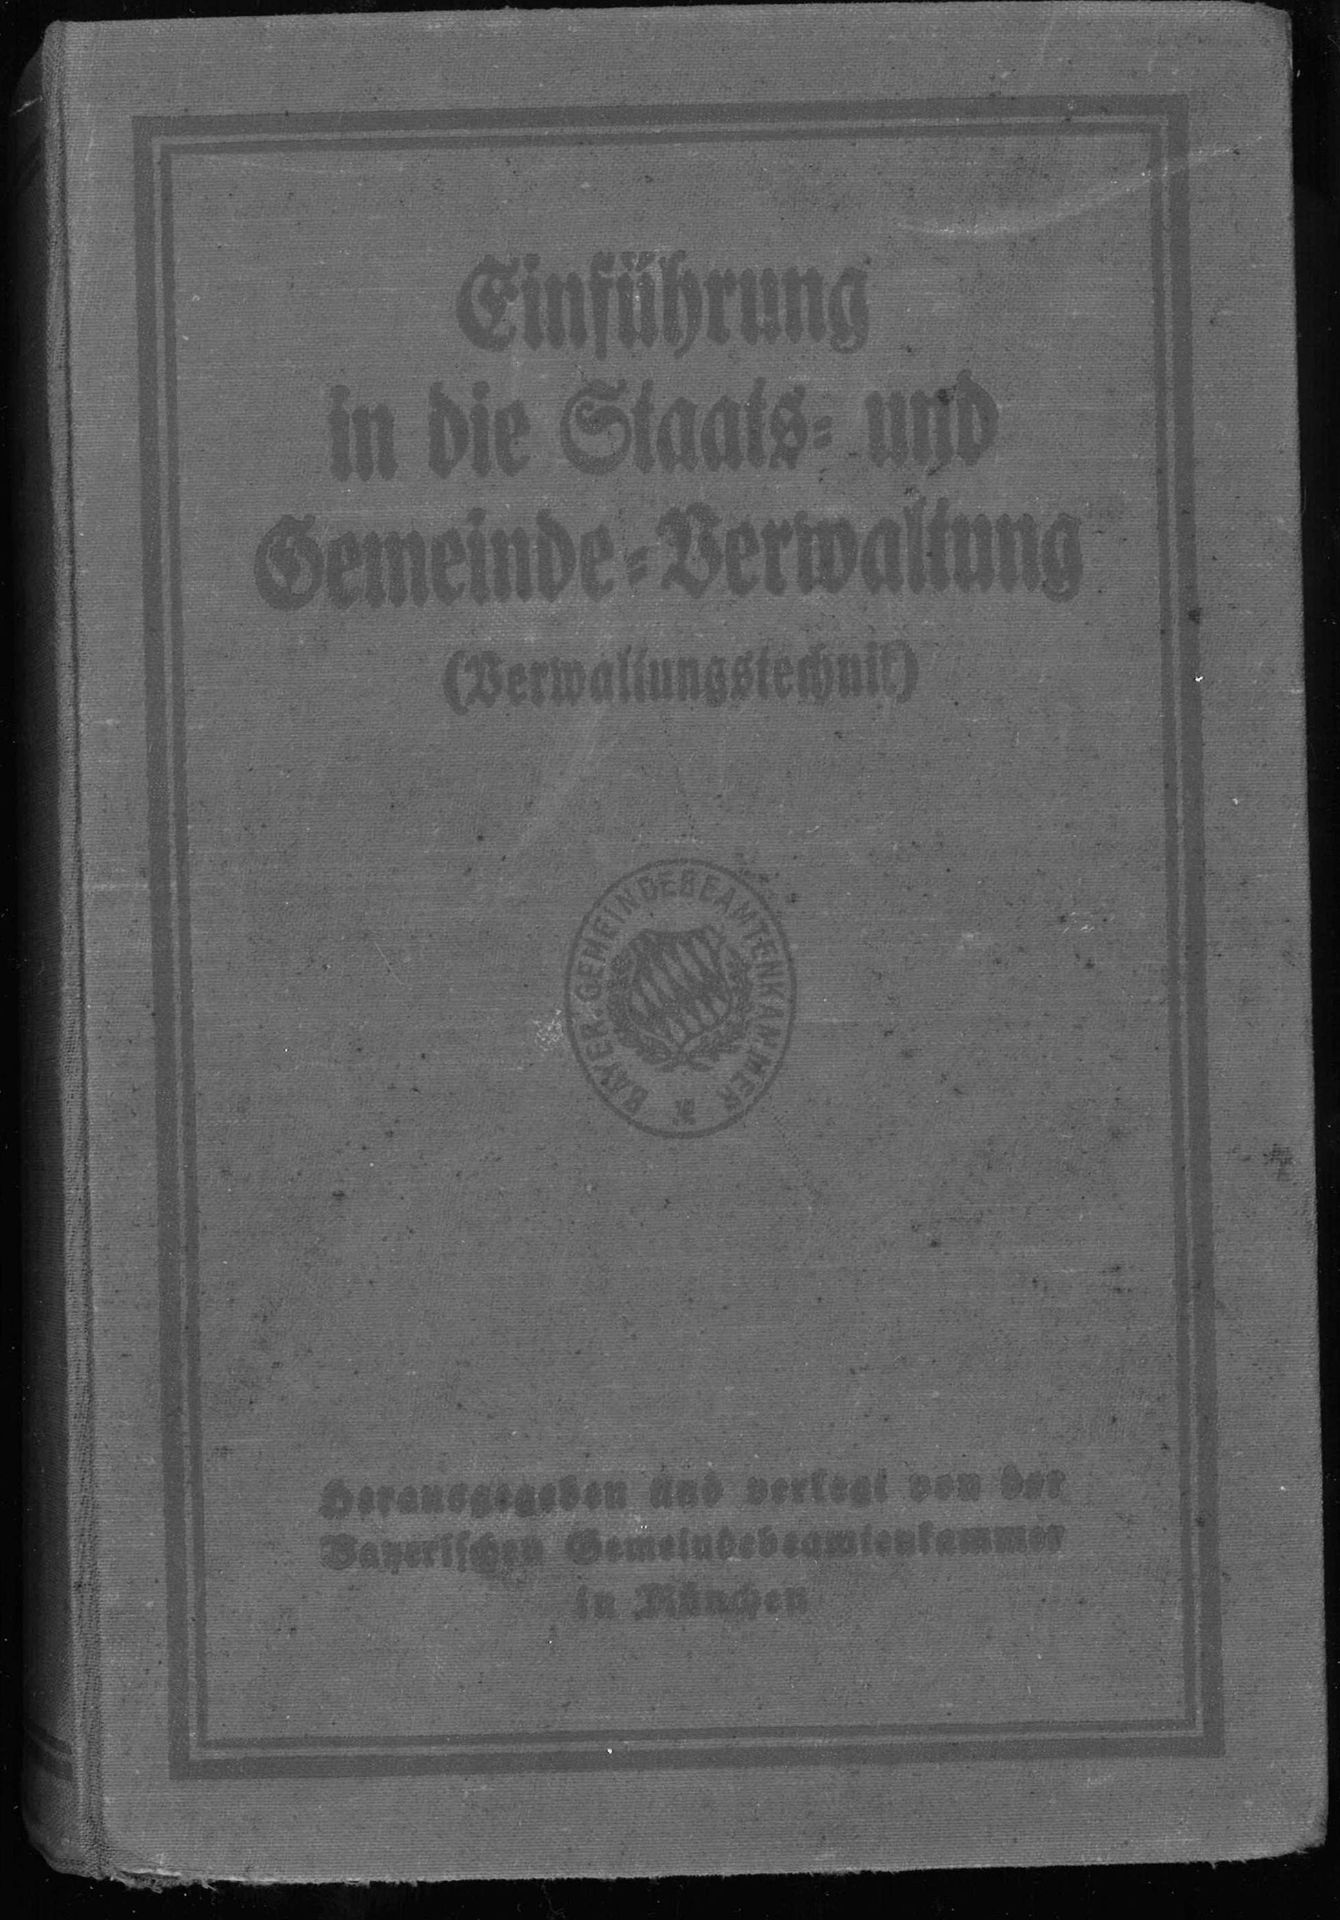 Einführung in die Staats-und Gemeinde-Verwaltung. München 1924. Stockfleckig.